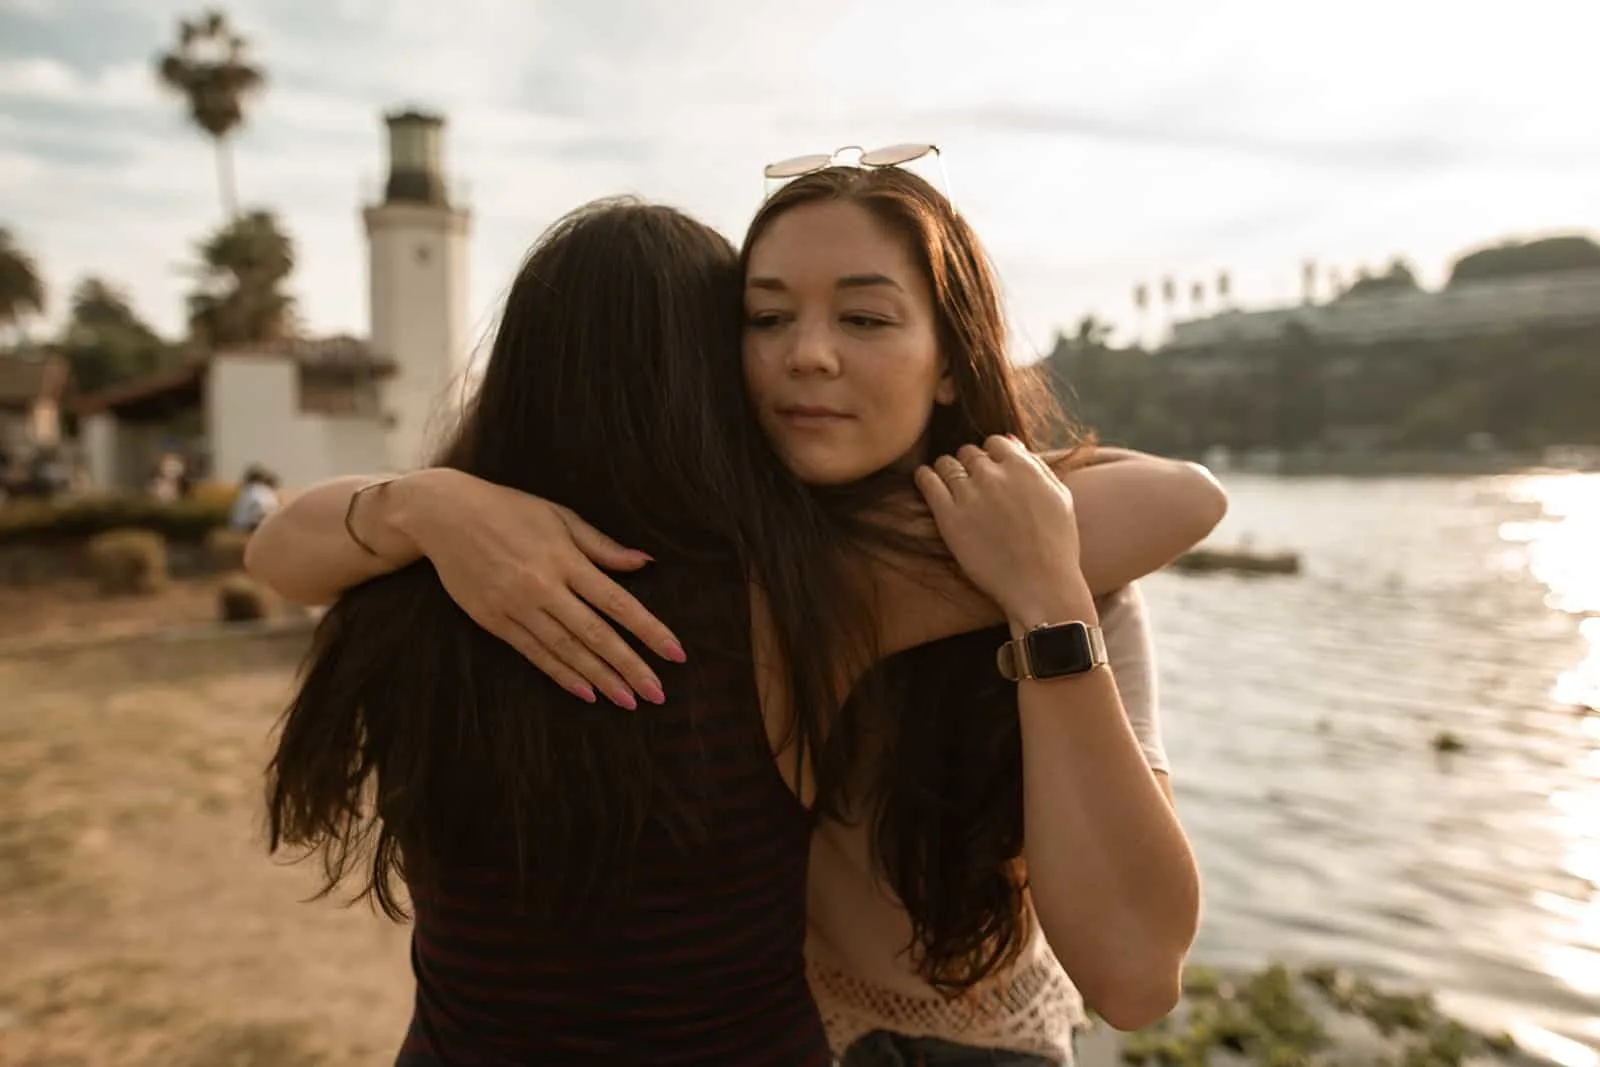 die verdächtige Frau umarmt ihre Freundin